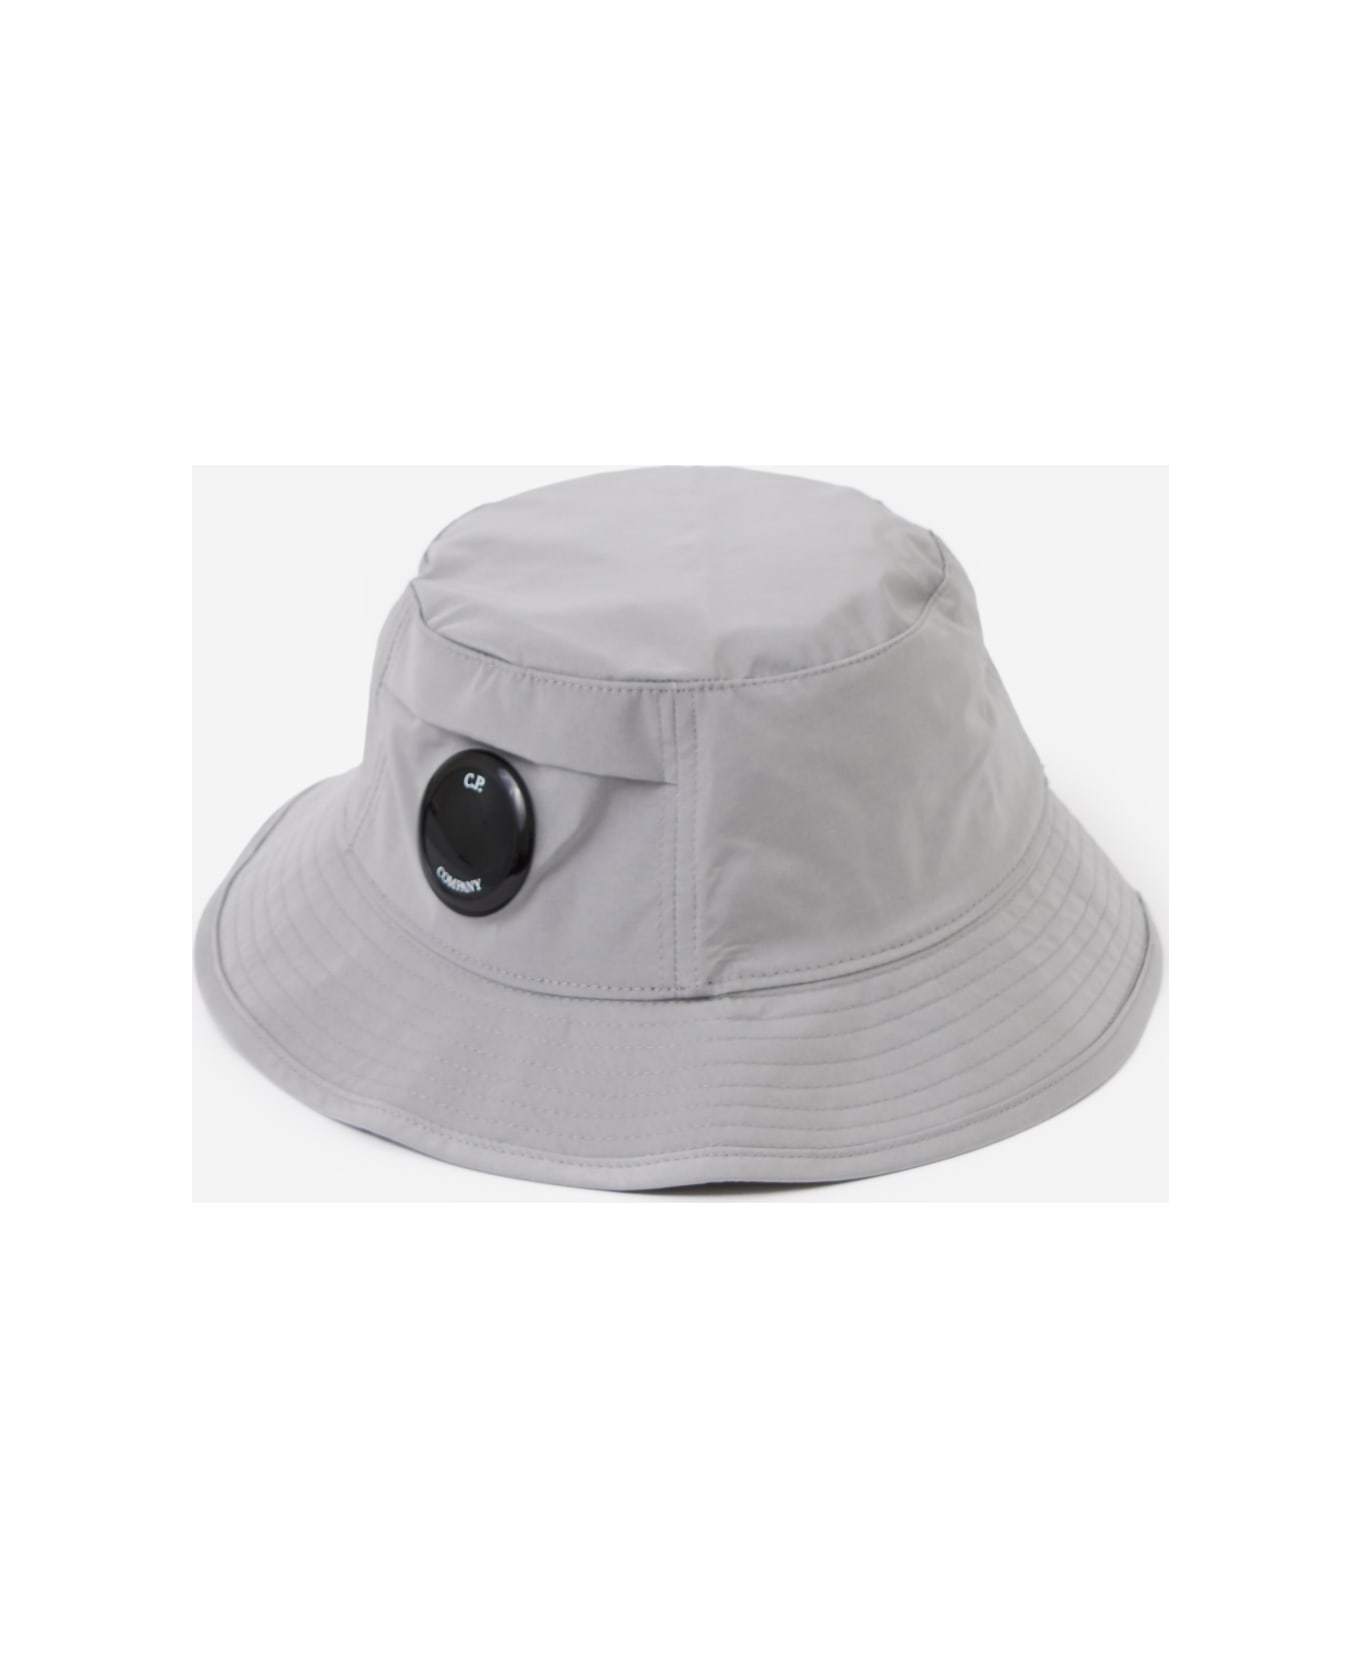 C.P. Company Hats - Drizzle